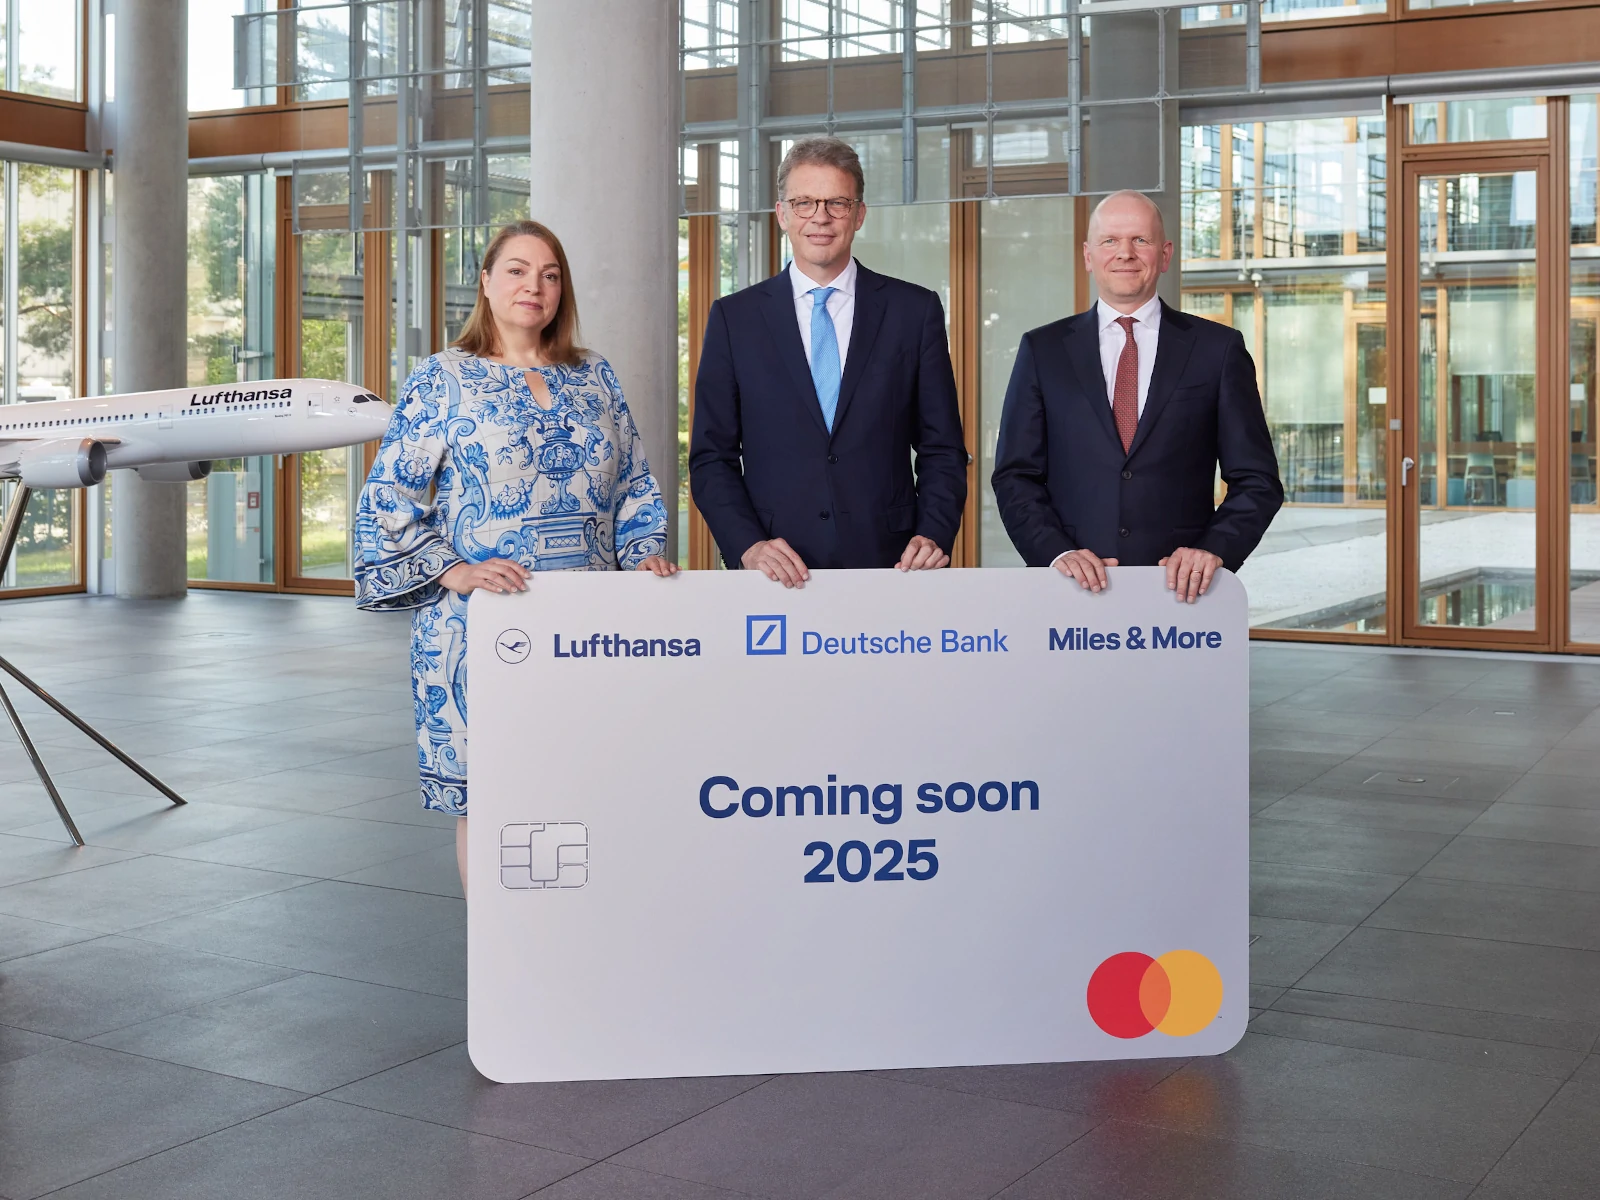 Neue Partnerschaft: Christina Foerster, Mitglied des Vorstandes der Deutschen Lufthansa AG, mit Christian Sewing,Vorstandsvorsitzender der Deutschen Bank, und Mastercard CEO Michael Miebach